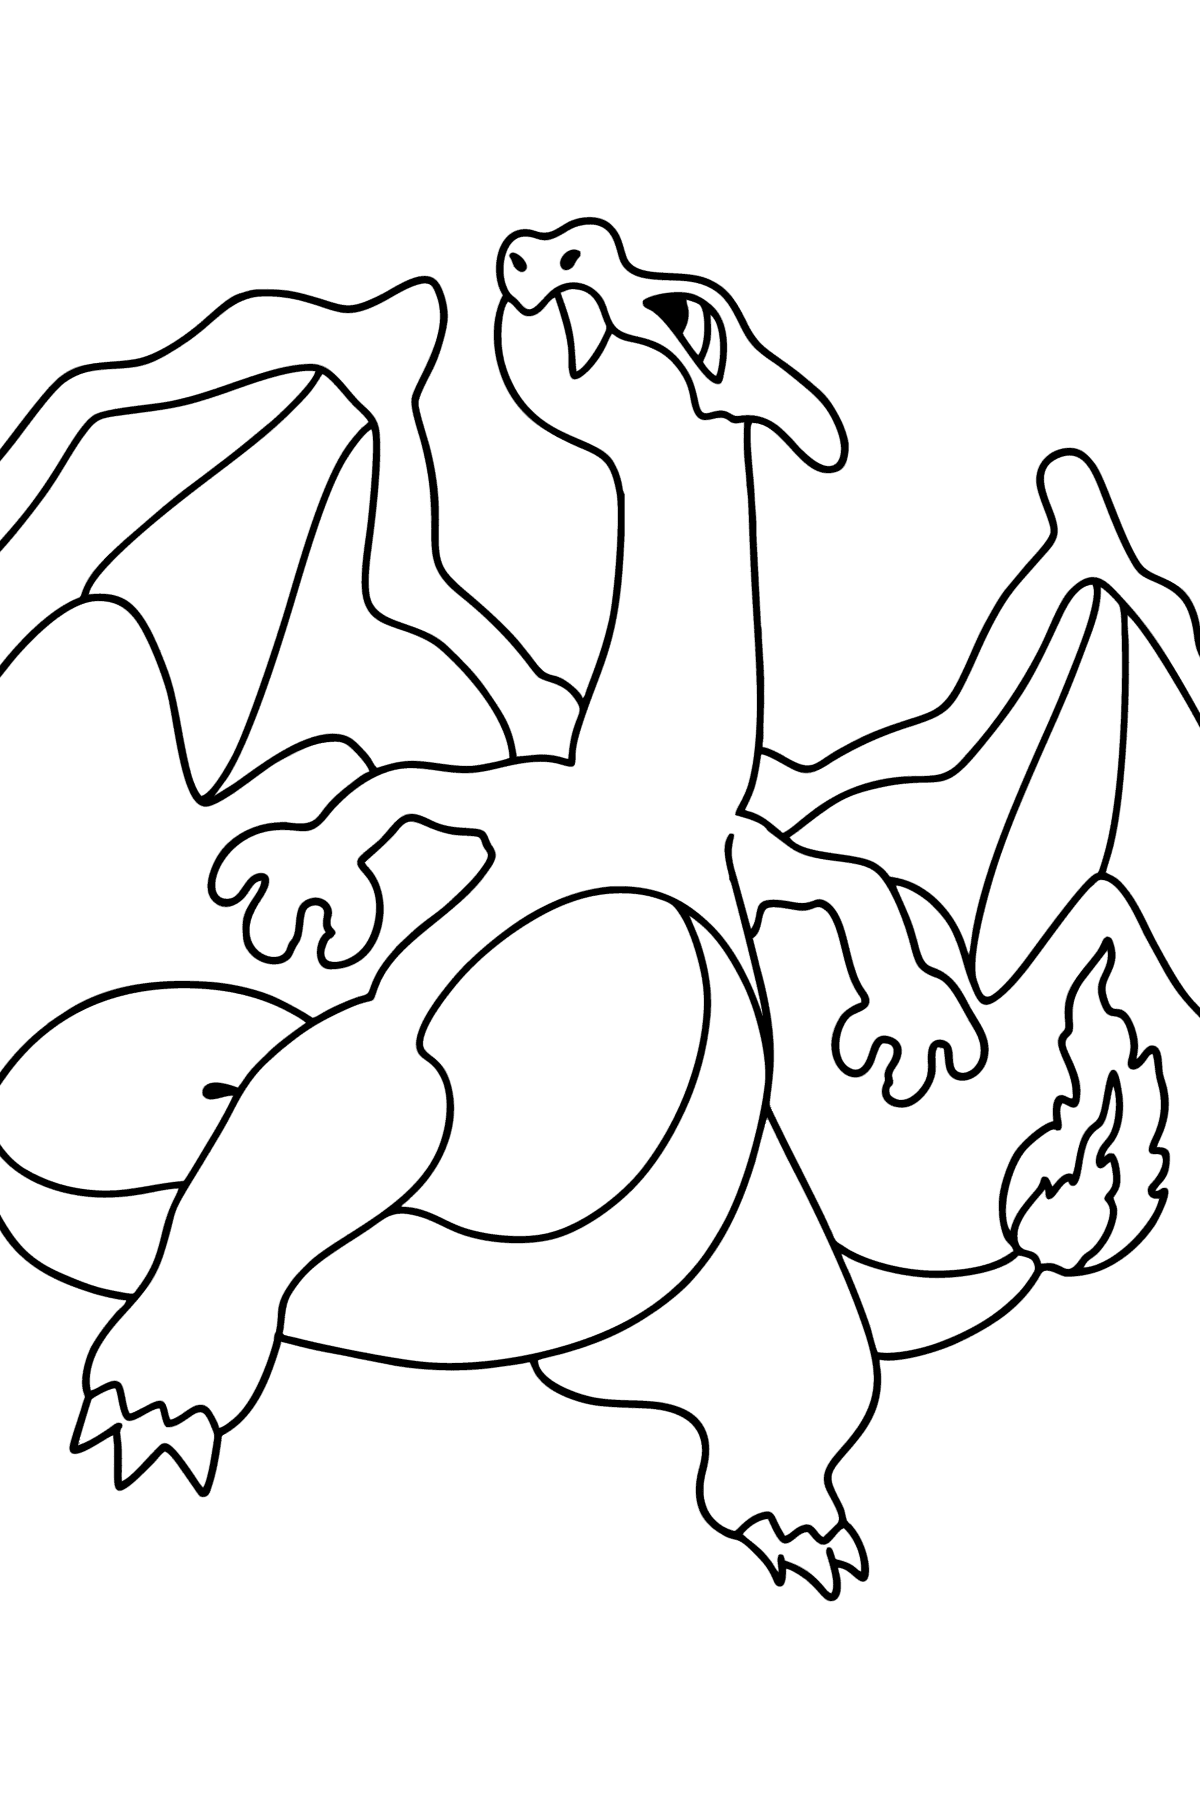 Tegning til farvning Pokémon Go Charizard - Tegninger til farvelægning for børn